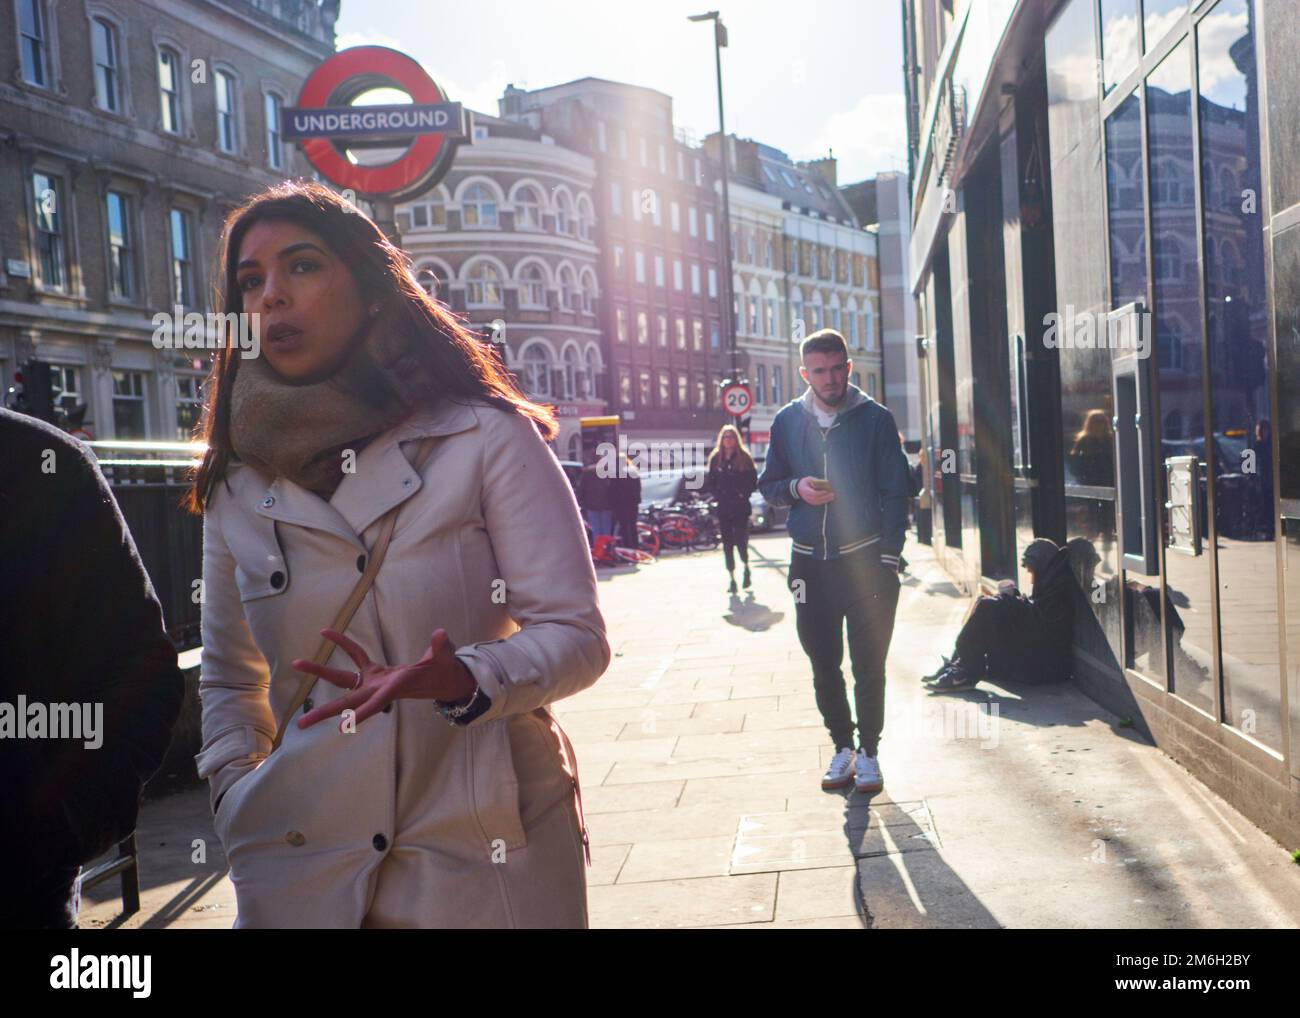 Les gens marchent devant la station de métro London Bridge Banque D'Images